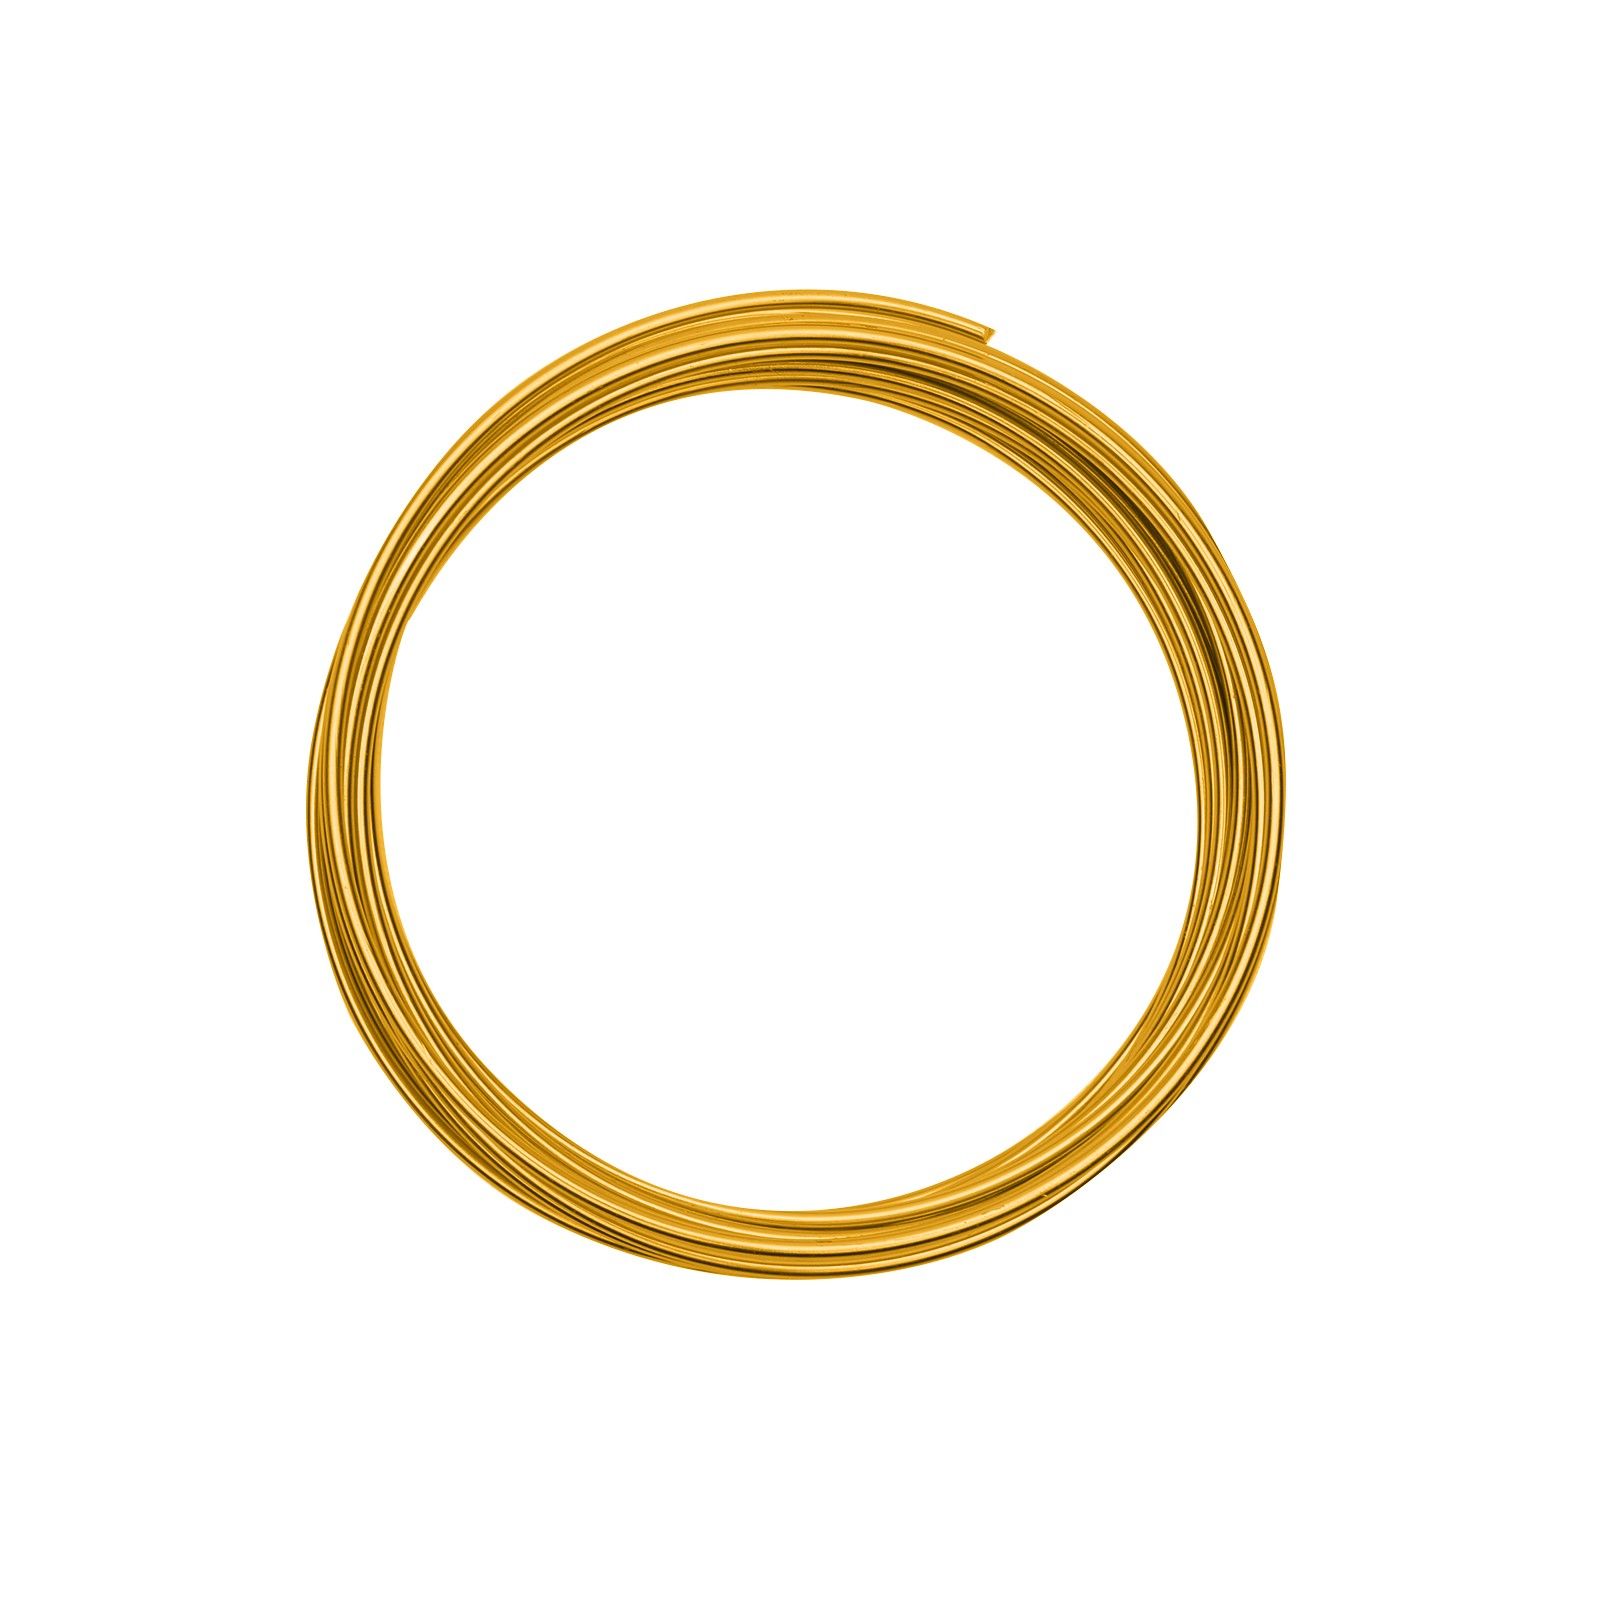 Vaessen Creative • Aluminium wire 2mm 5m gold